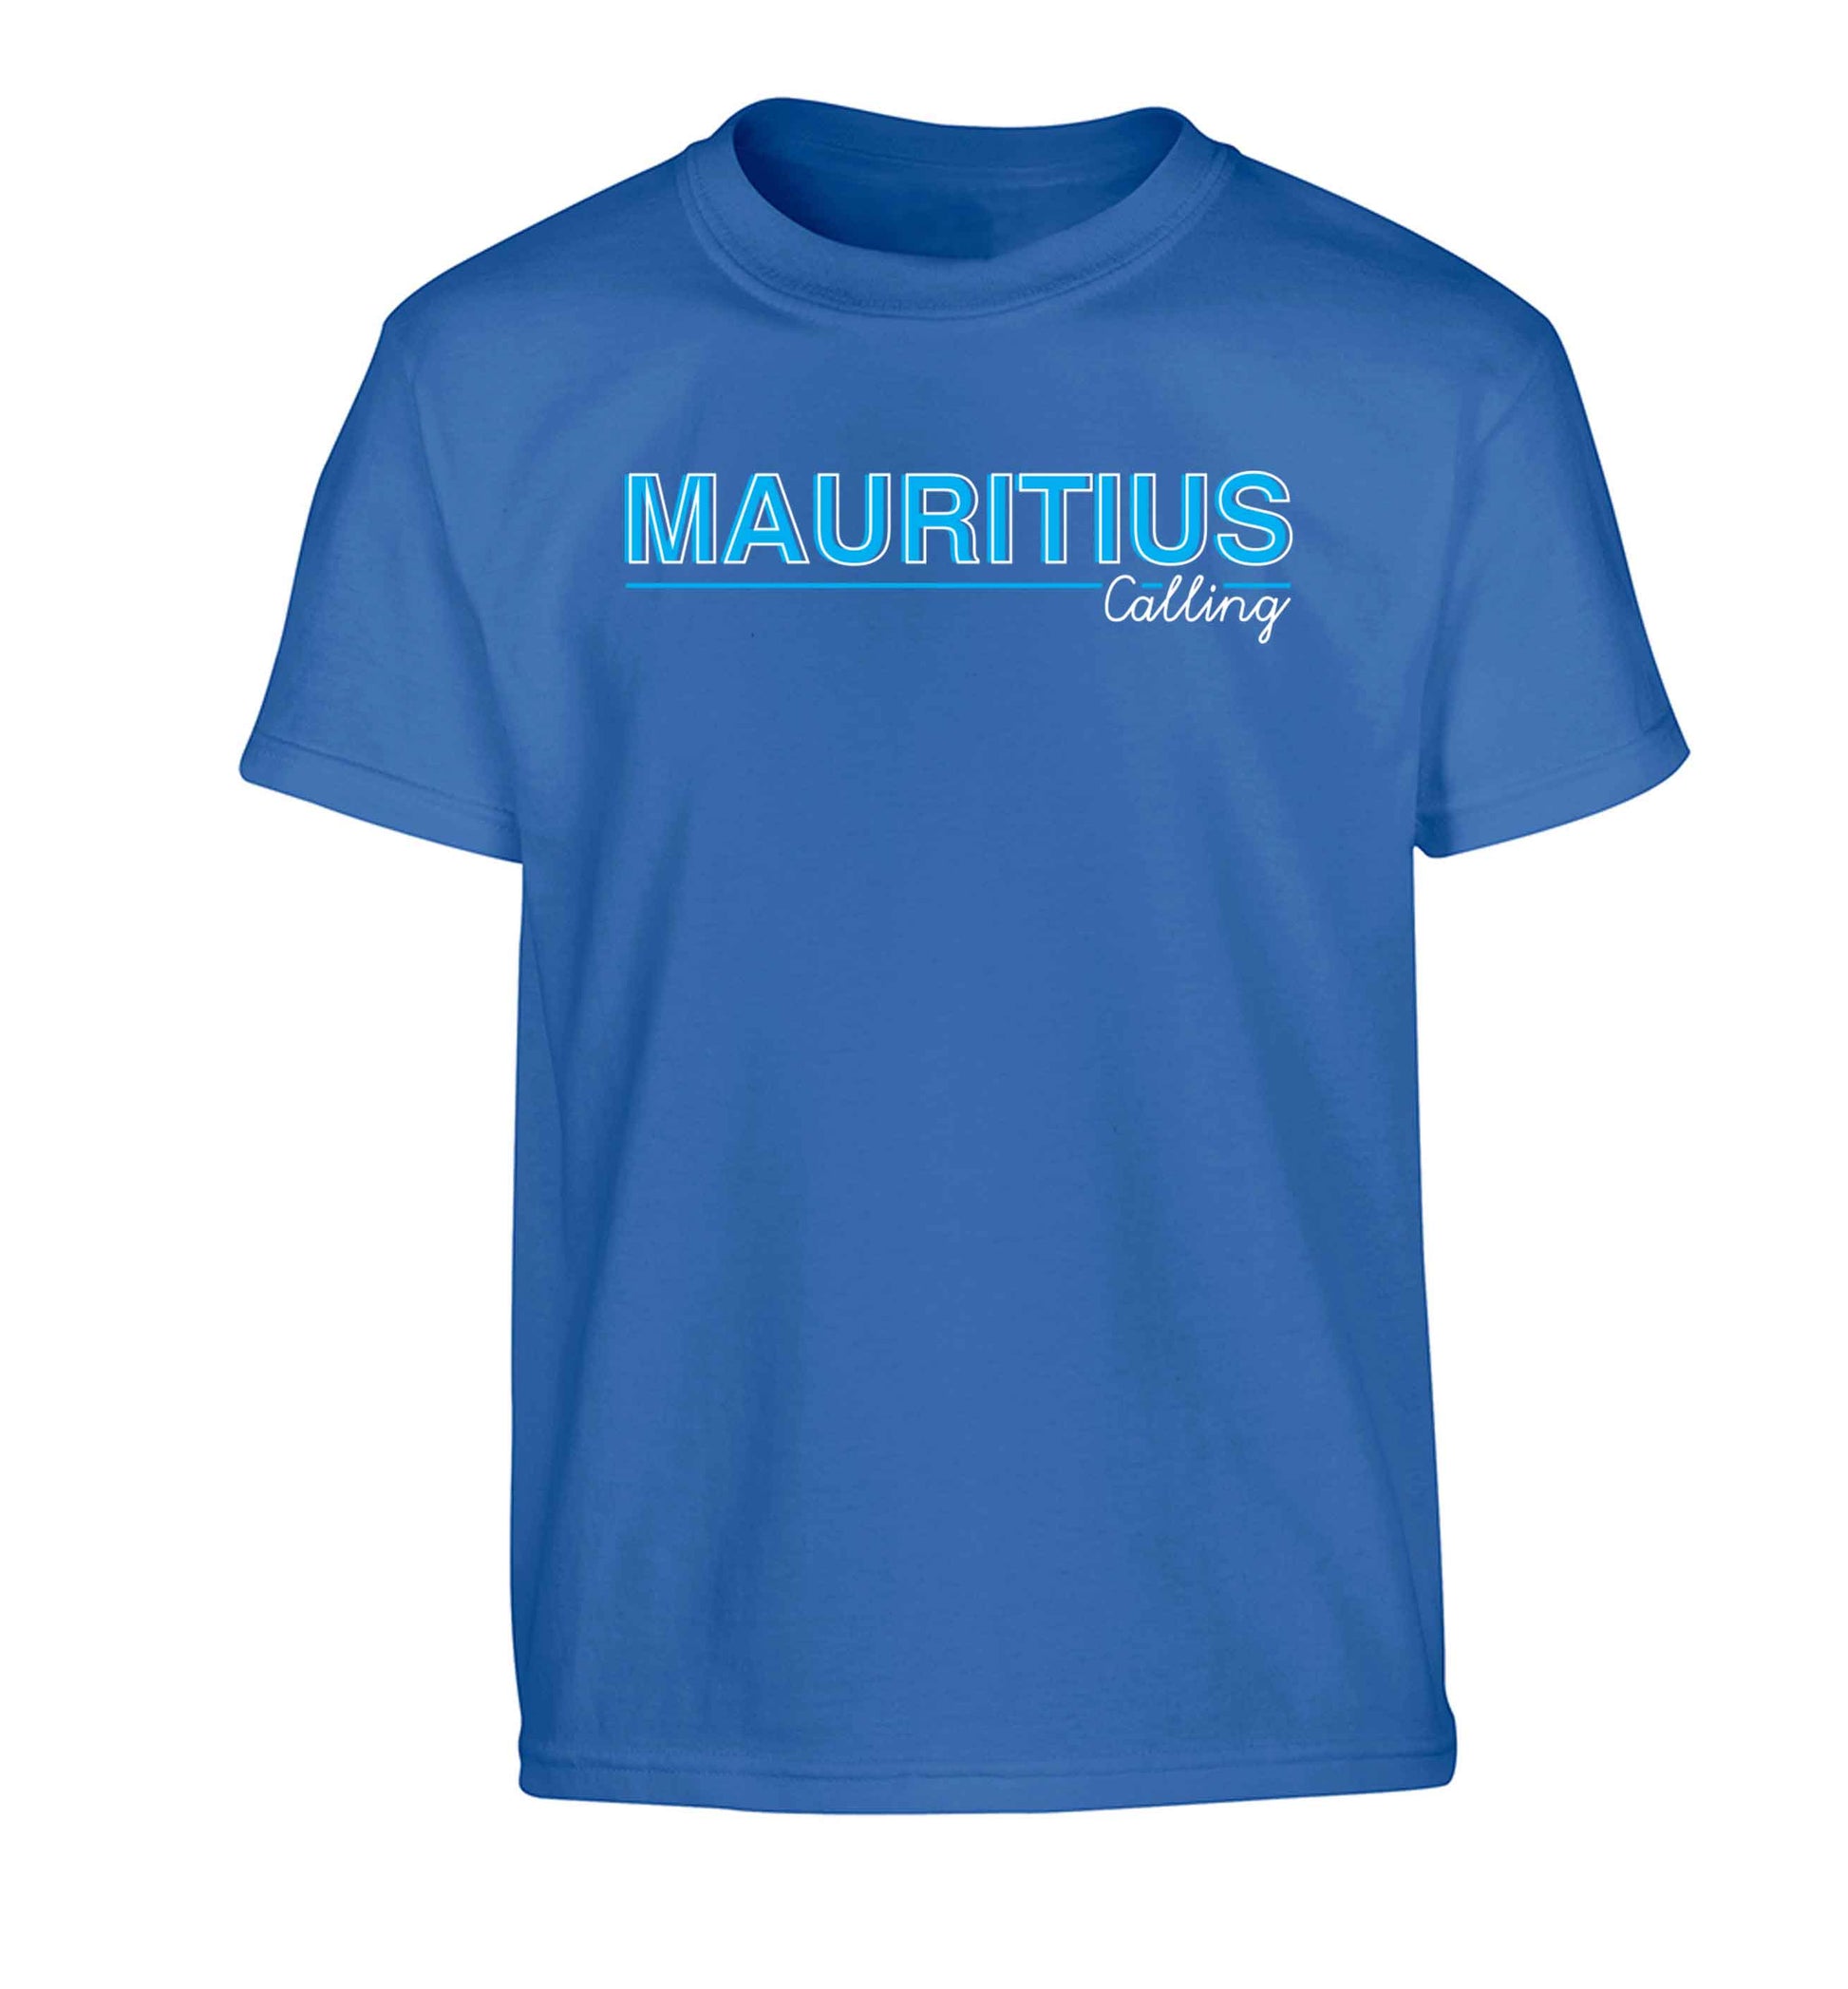 Mauritius calling Children's blue Tshirt 12-13 Years